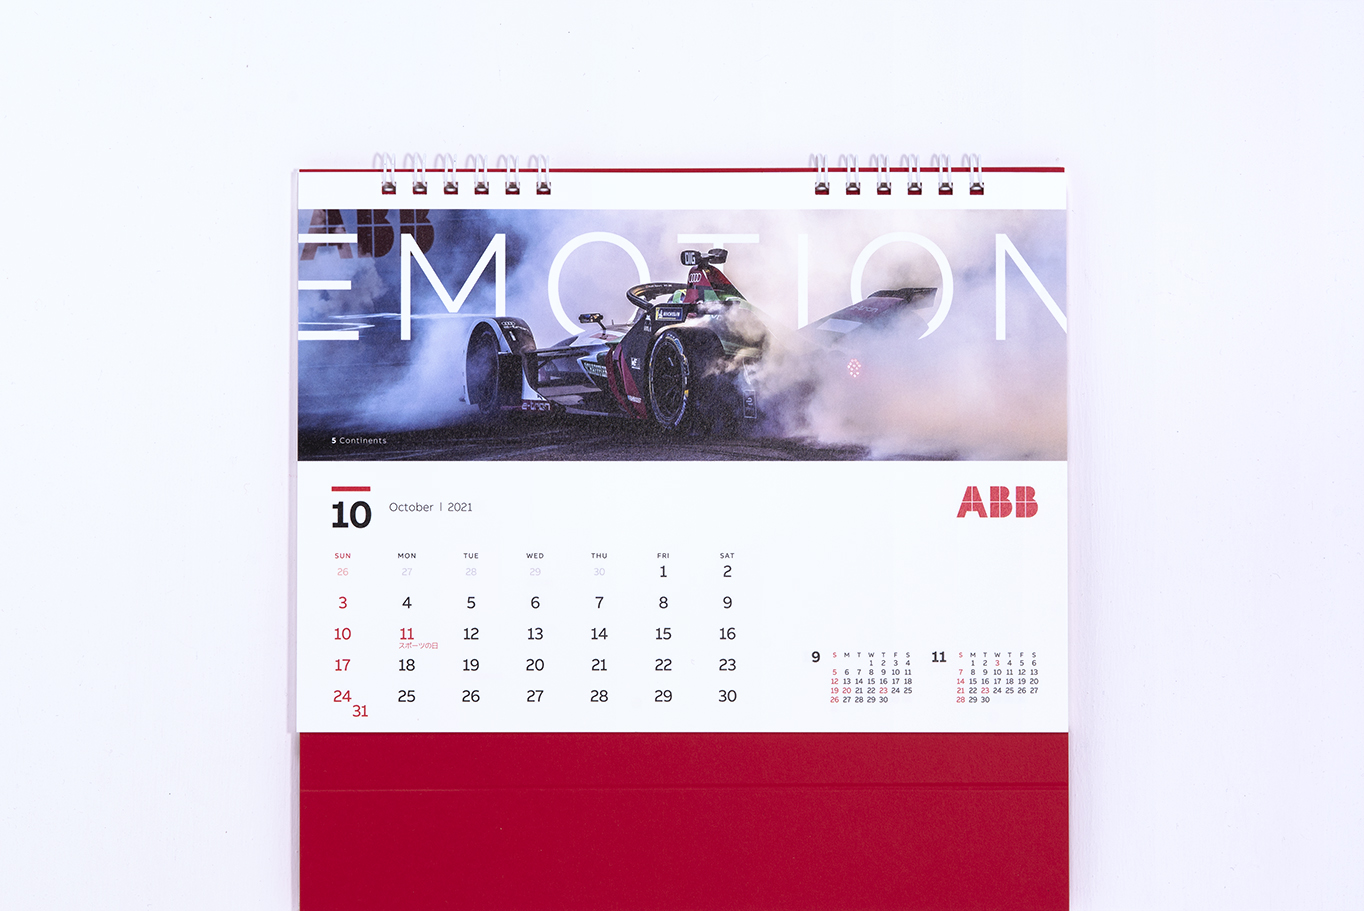 ABBジャパン様の2021年卓上カレンダーはスタイリッシュでおしゃれなデザインに